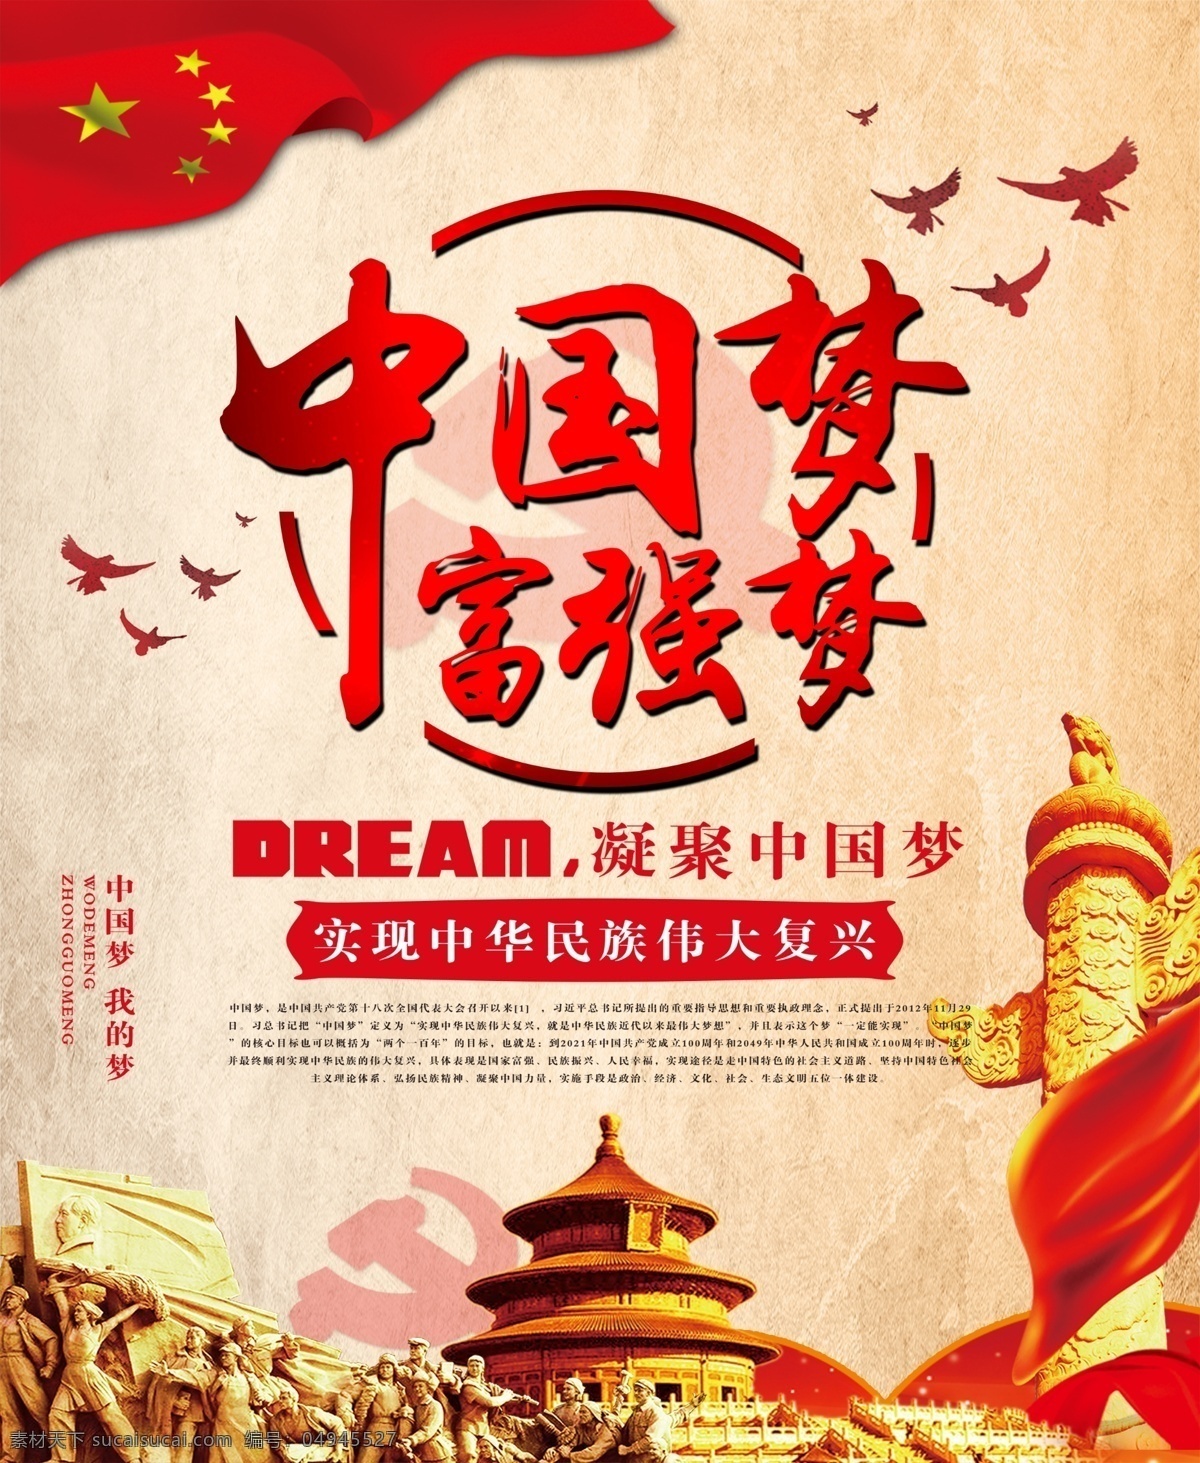 中国梦 中国梦展板 我的中国梦 中国梦海报 中国梦文化 文明城市